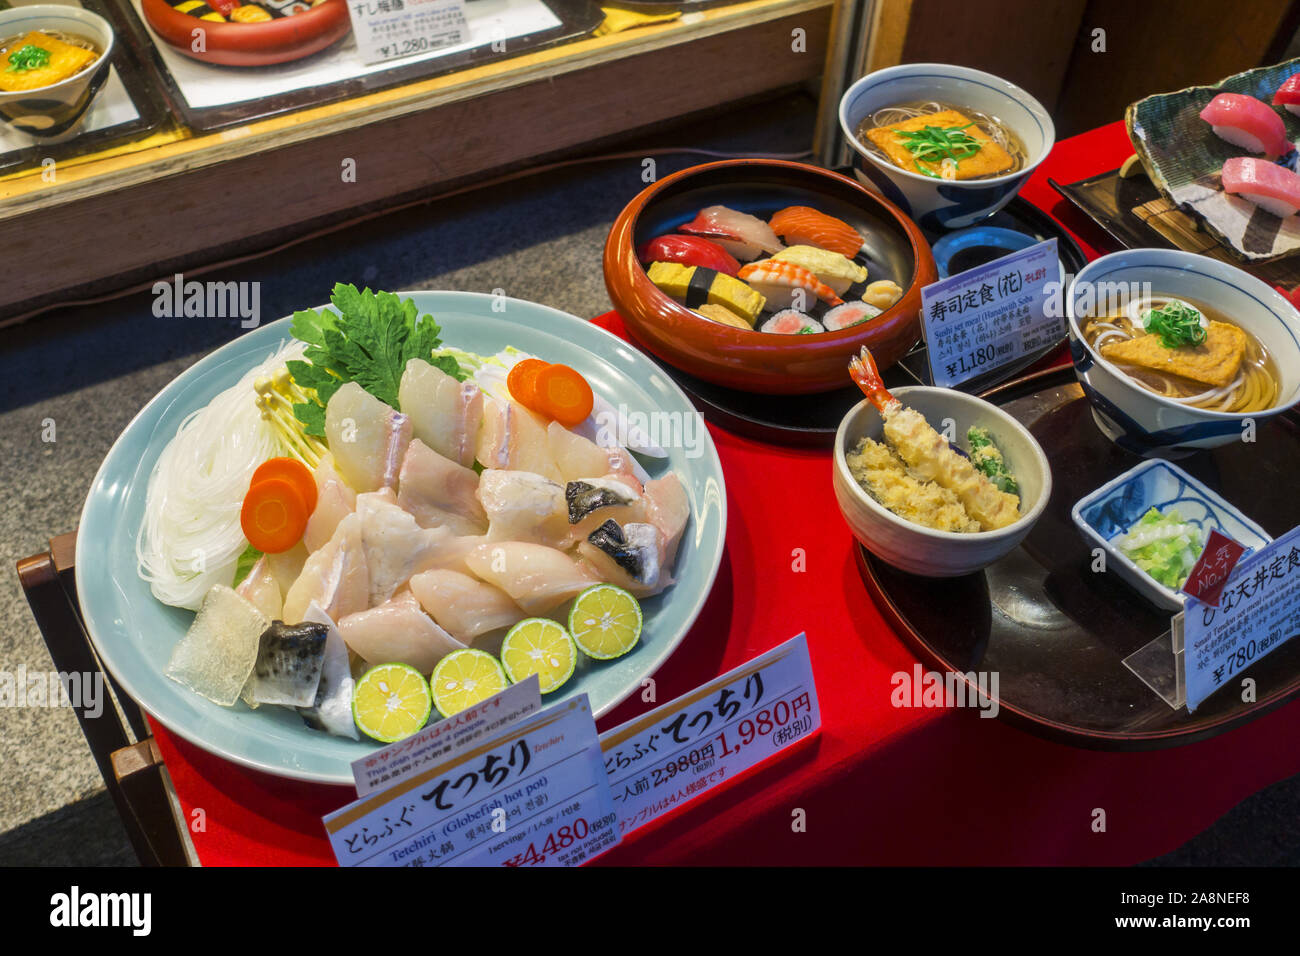 Osaka, Giappone - Ottobre 27th, 2019: Plastica modelli alimentari visualizzati al di fuori del ristorante. Foto Stock